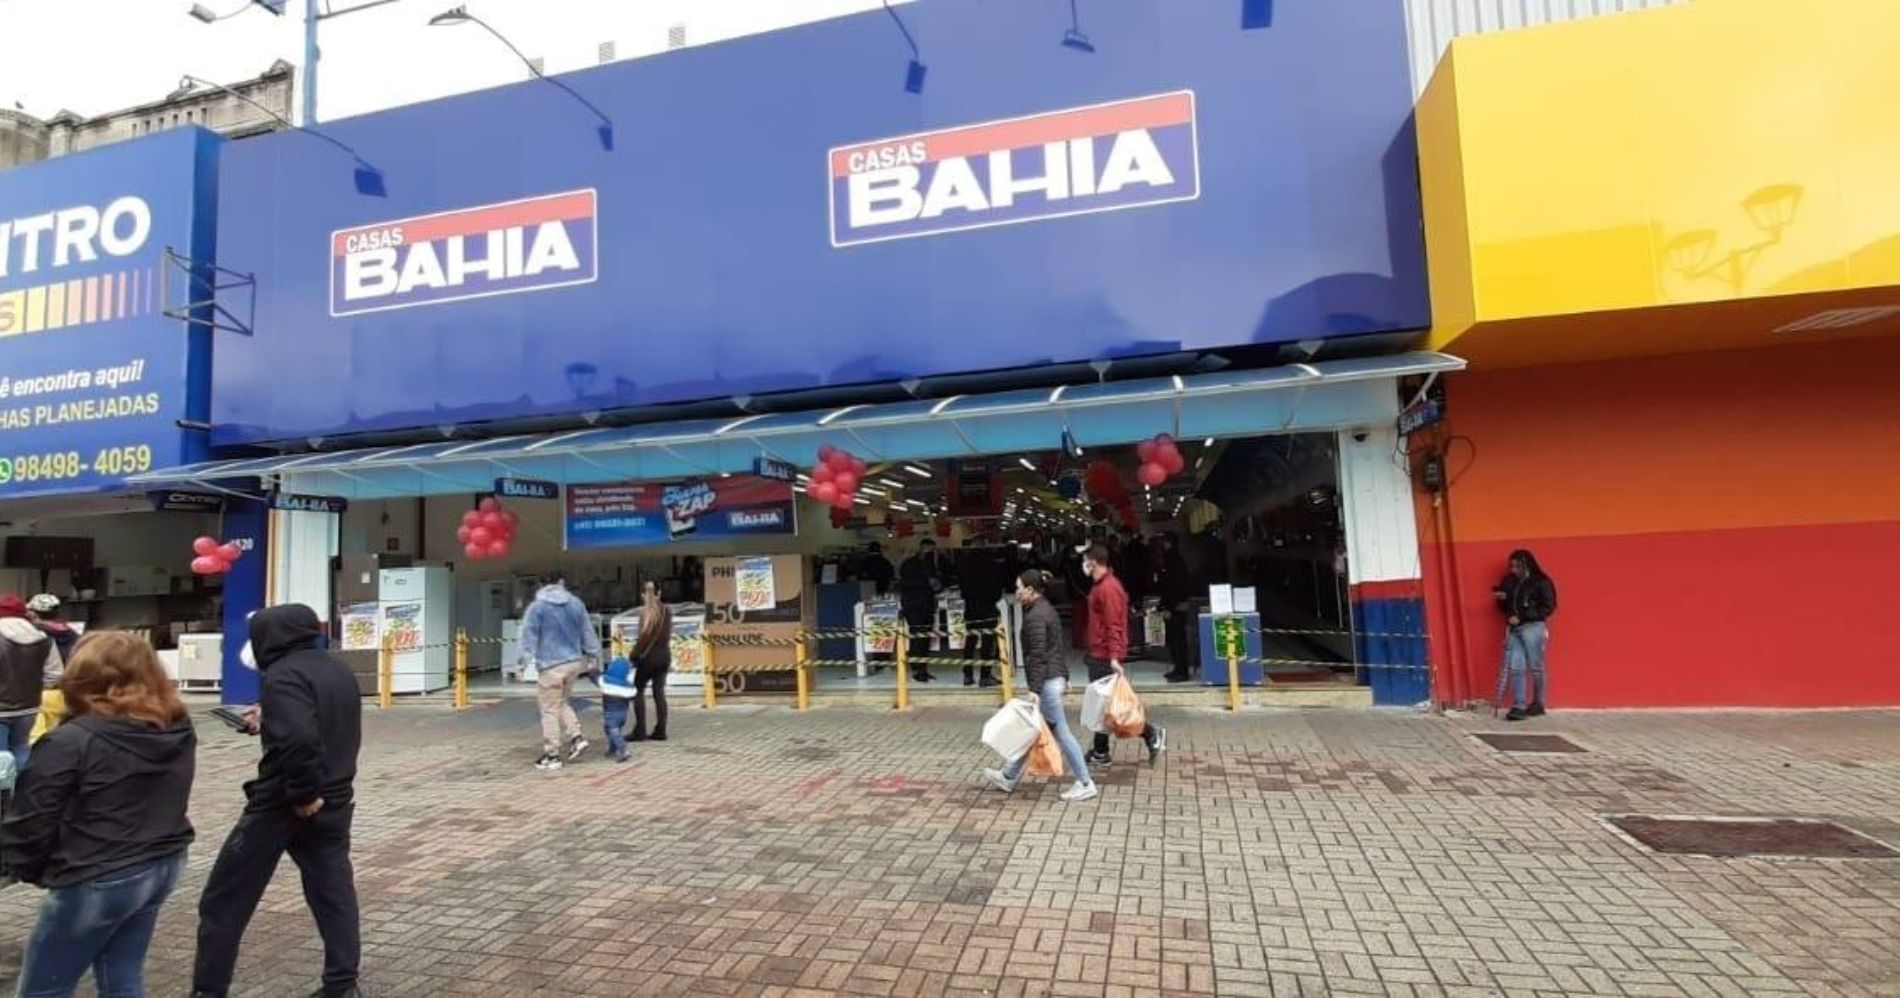 Casas Bahia promove saldão com descontos de até 50% no Centro de Distribuição de São José dos Pinhais